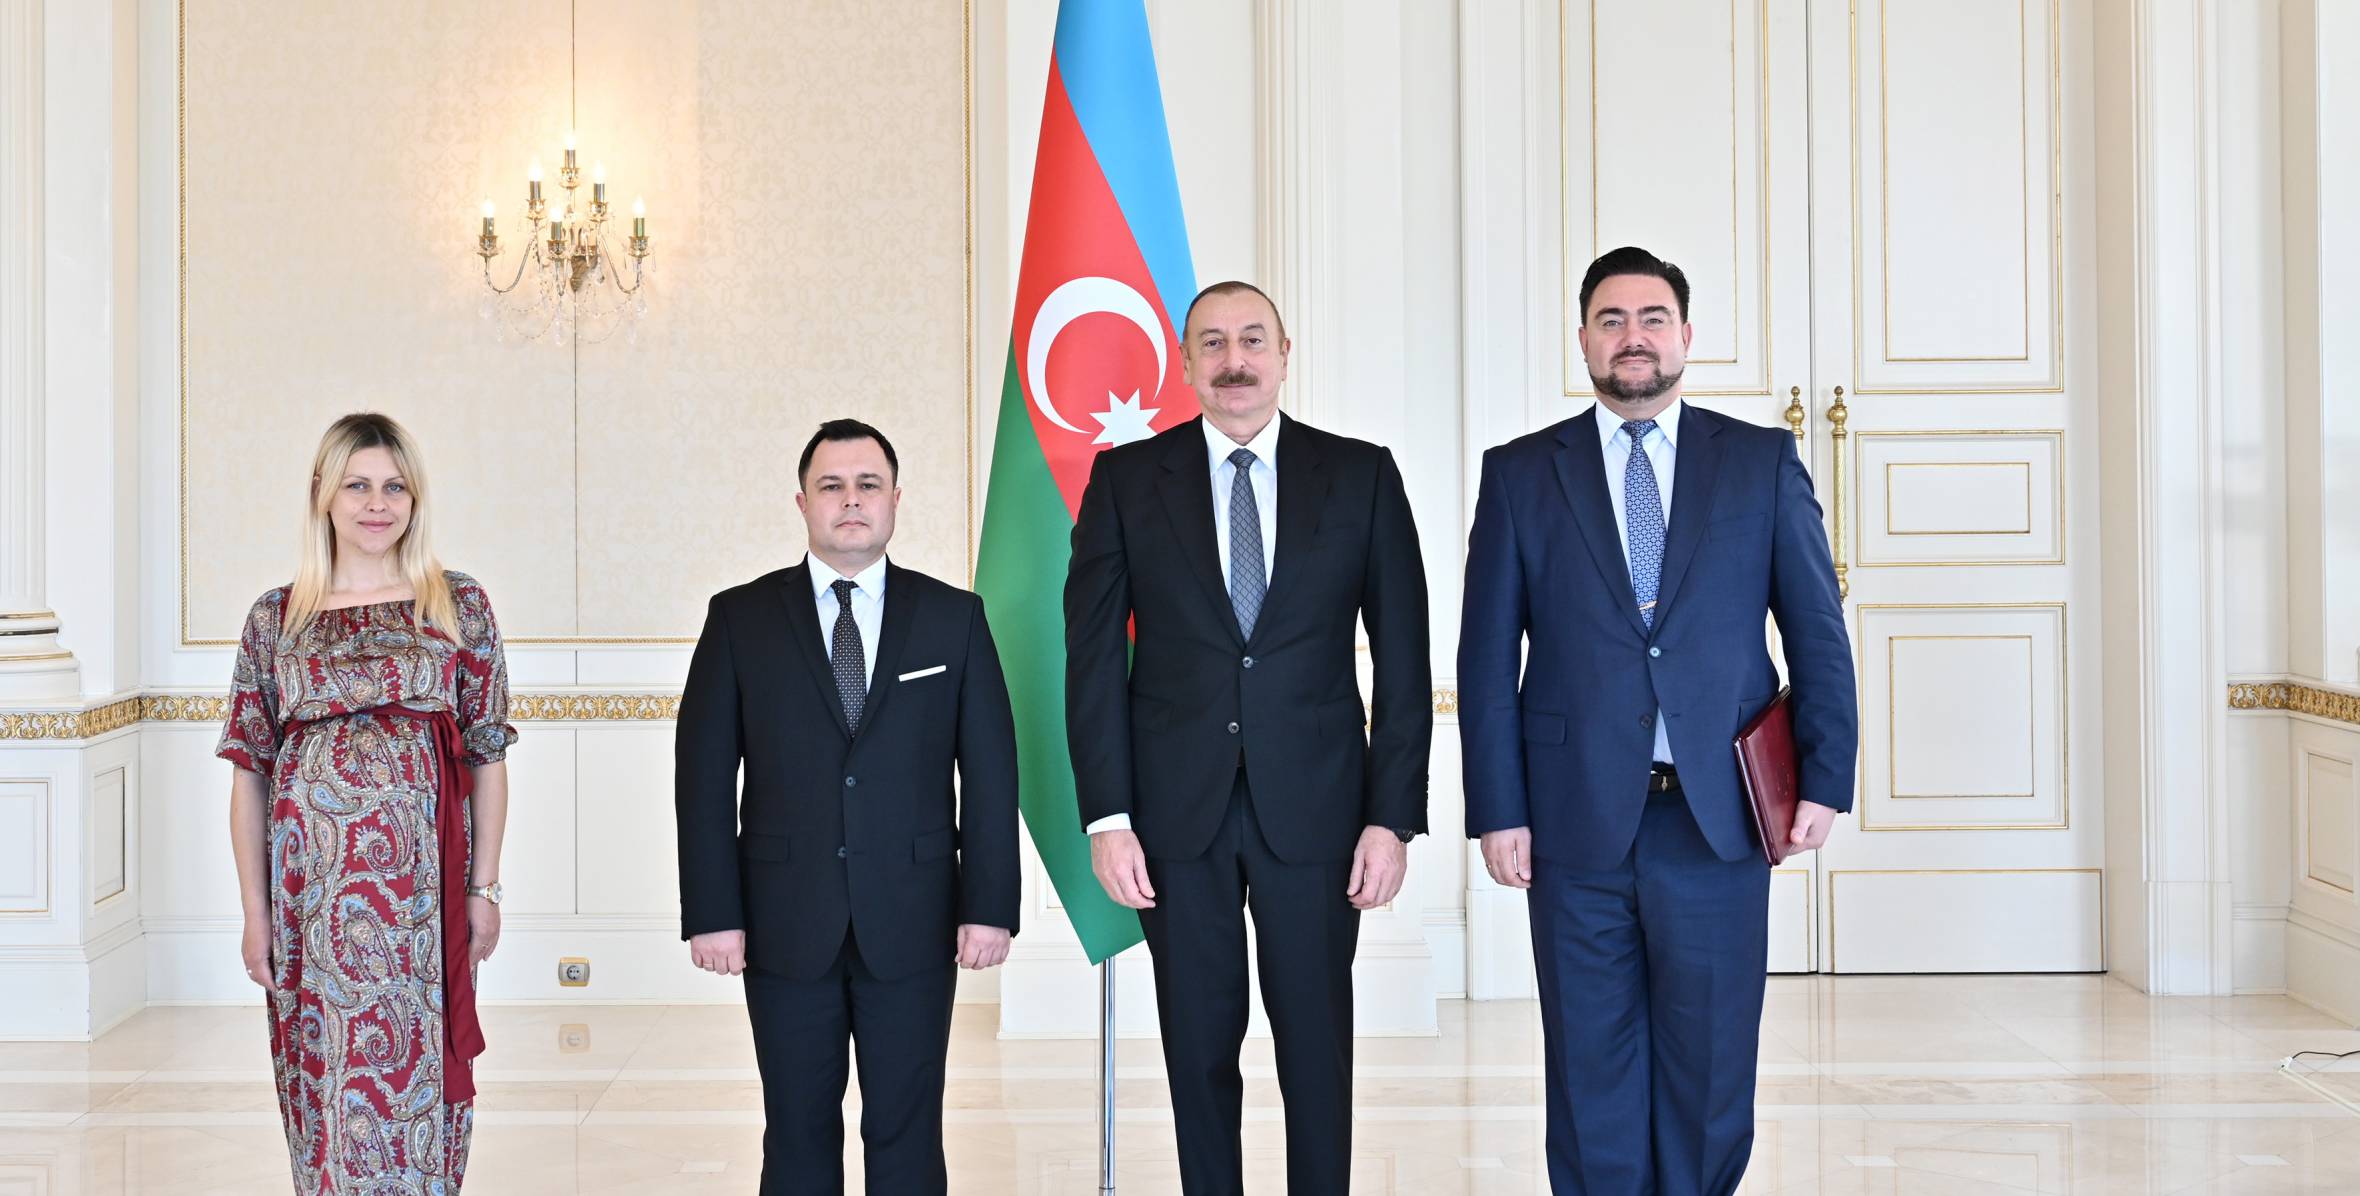 Ильхам Алиев принял верительные грамоты новоназначенного посла Молдовы в Азербайджане